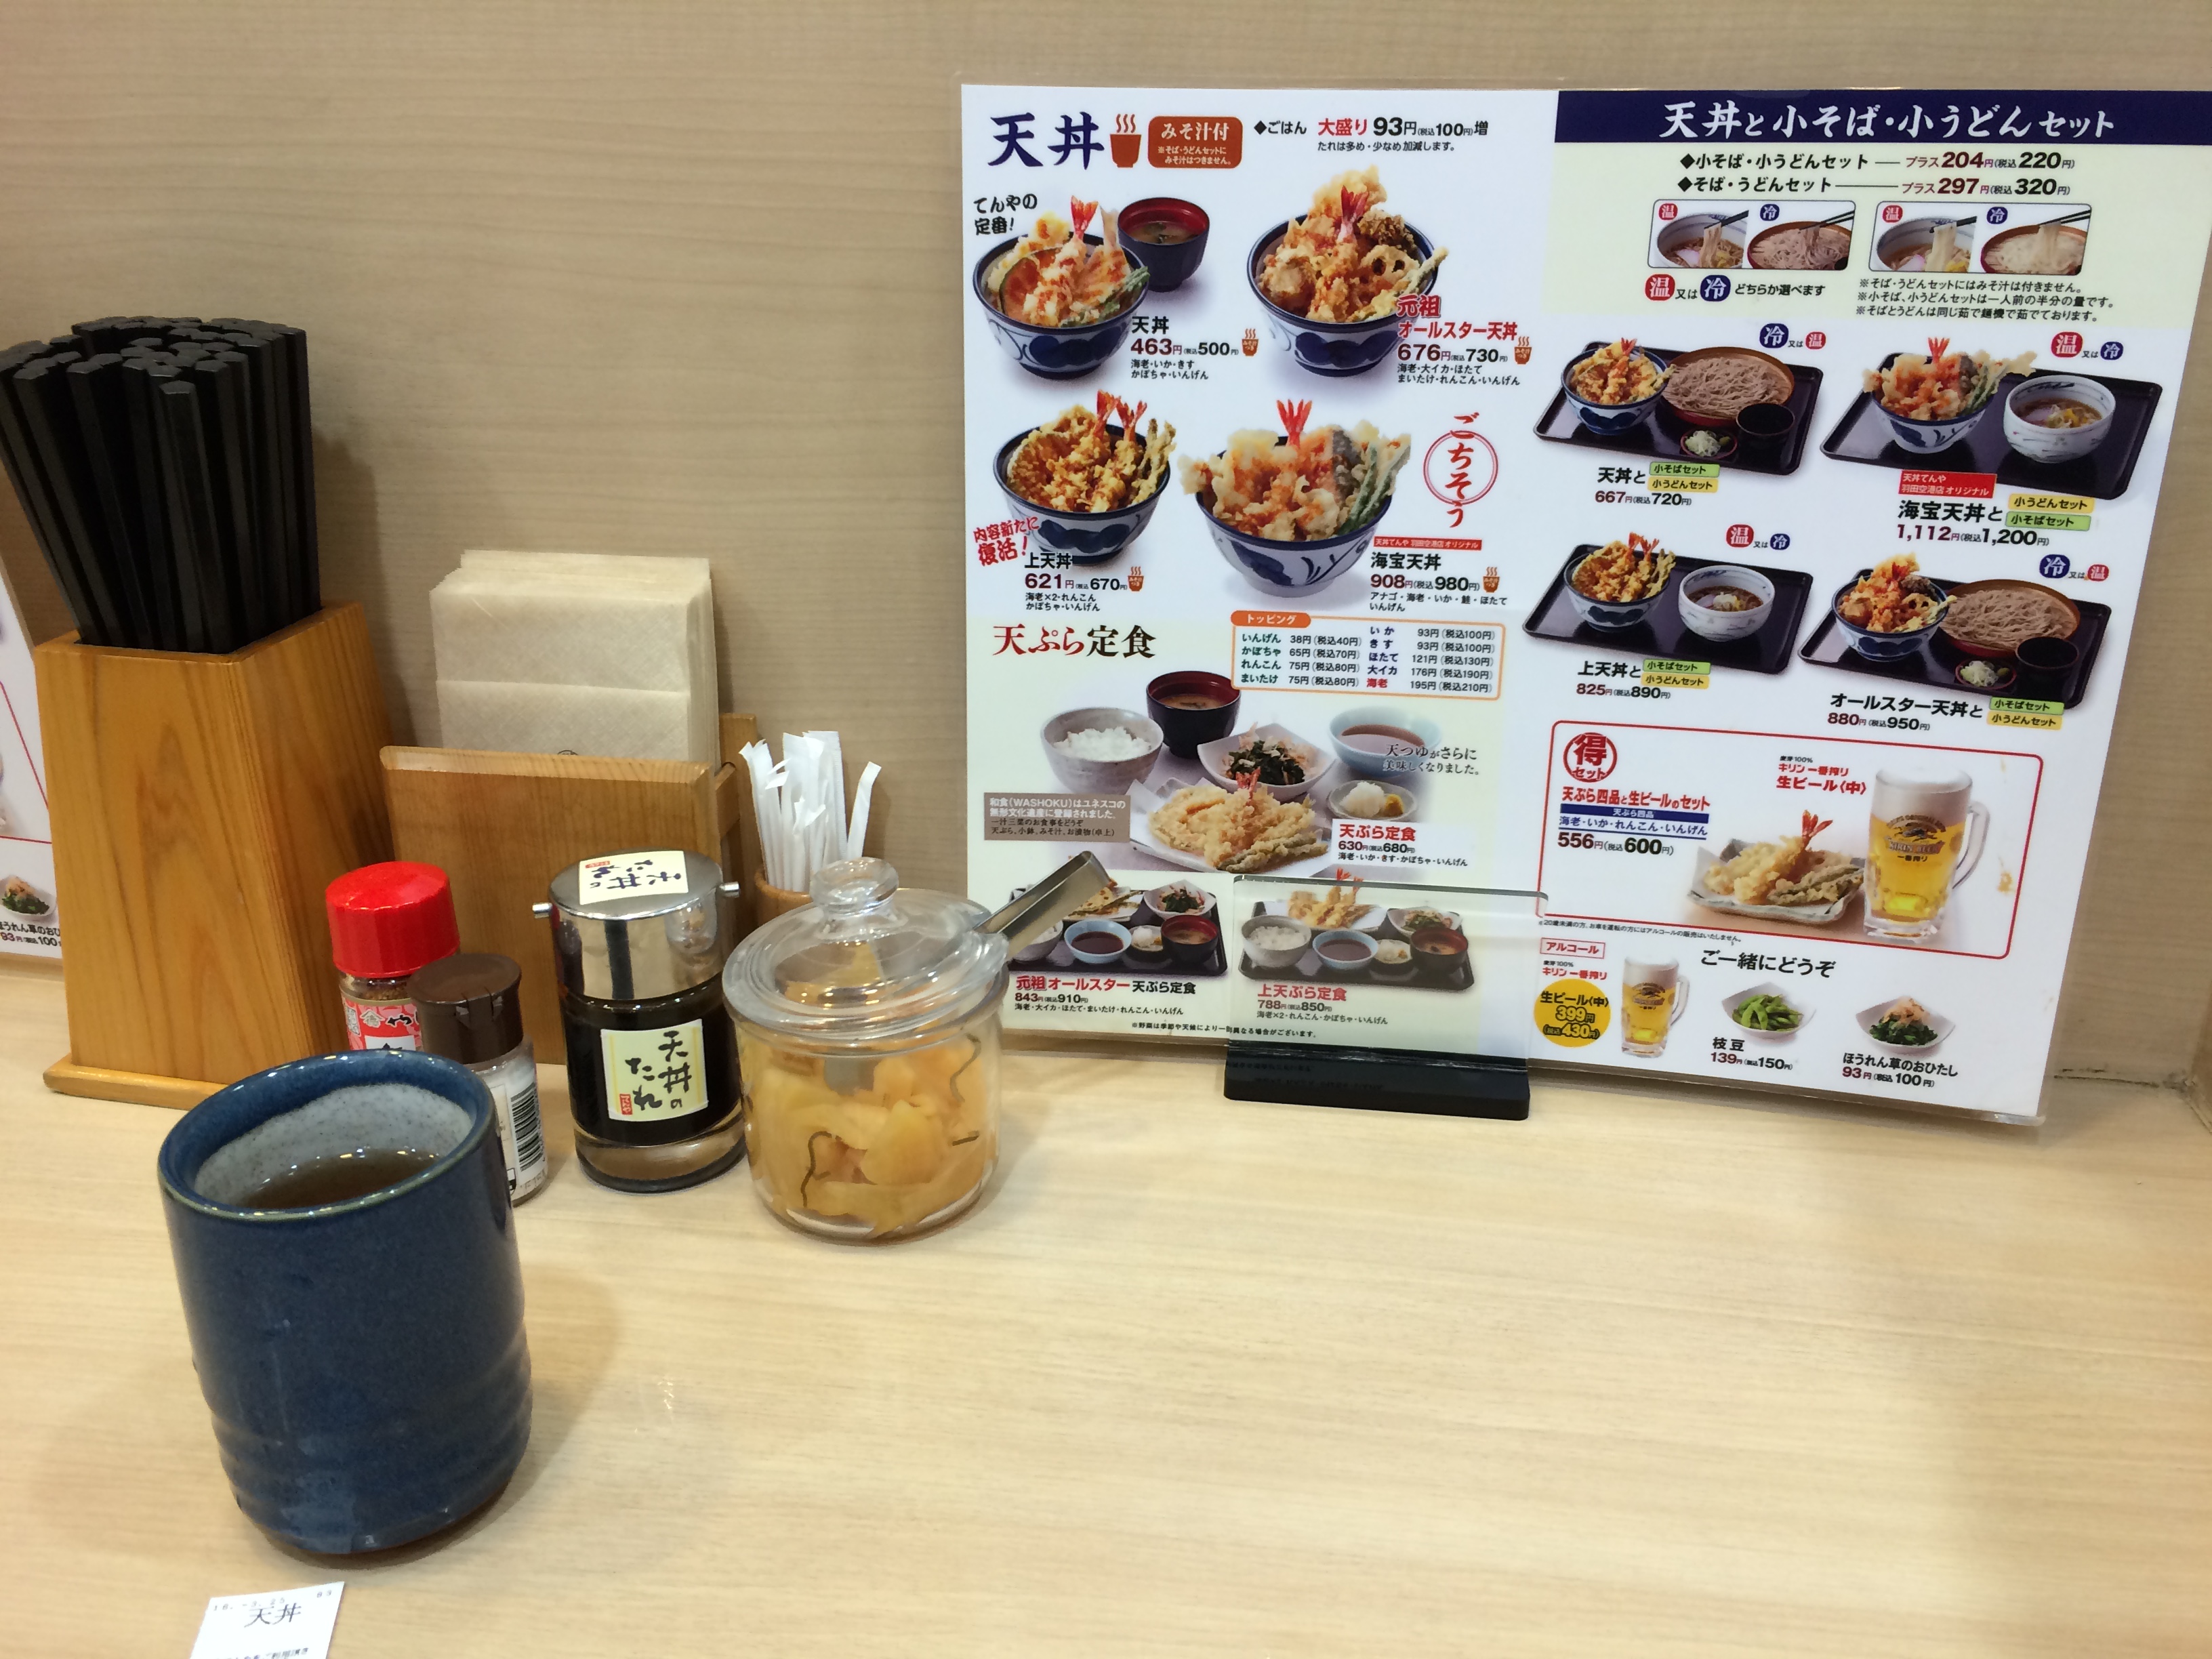 てんや 羽田空港店で人気メニュー 天丼の天ぷら食べる